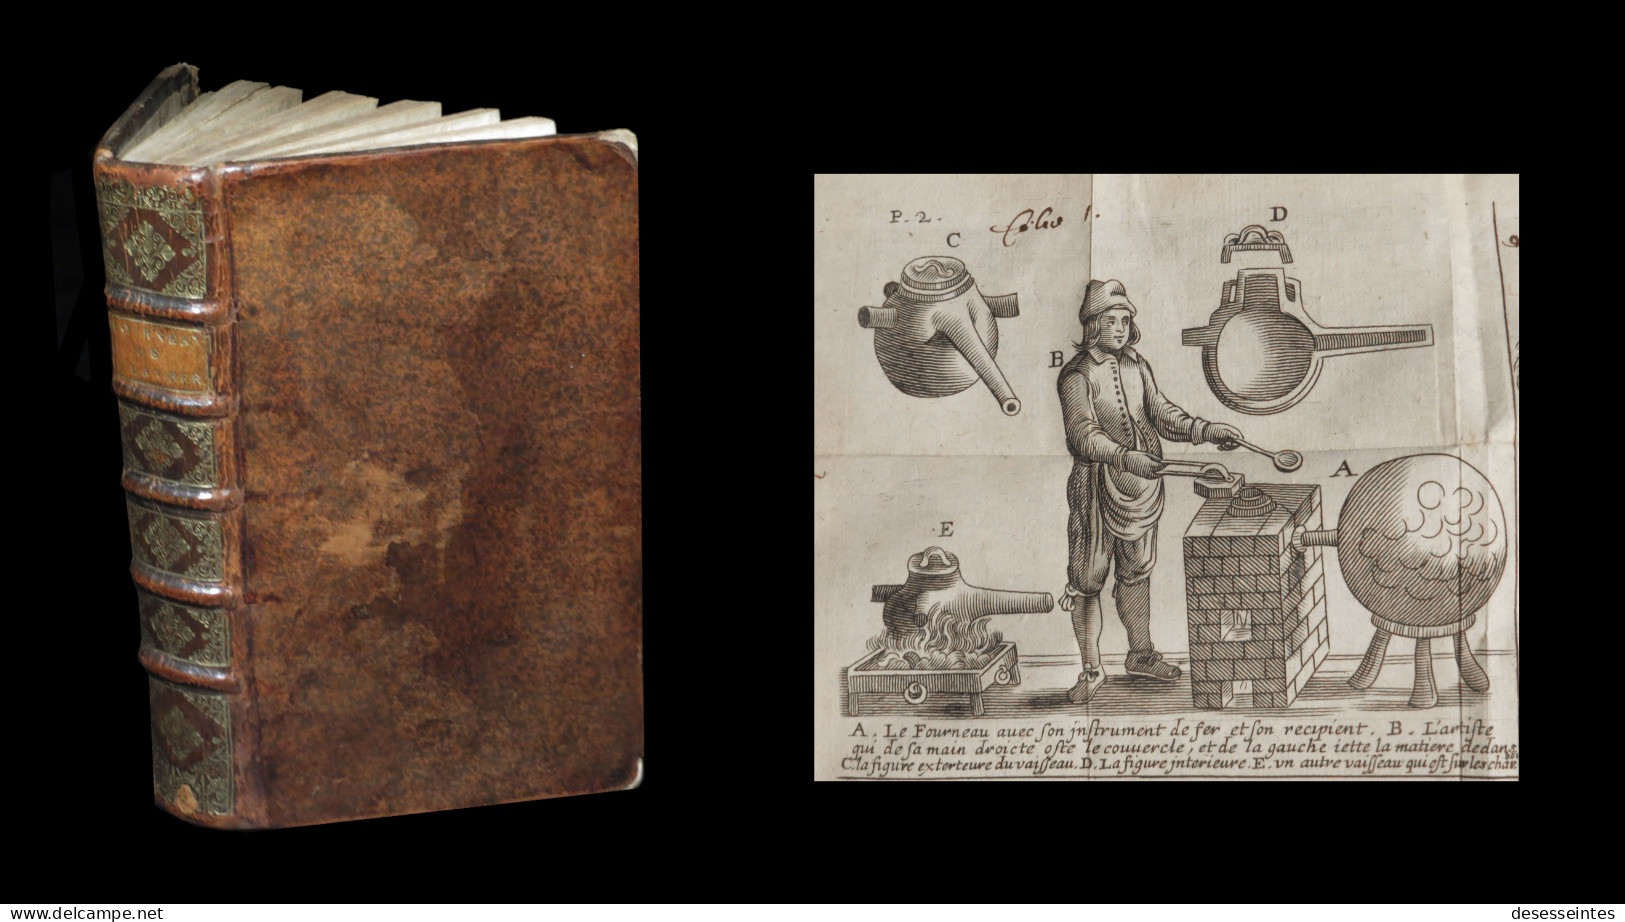 [ALCHIMIE HERMETISME ATHANOR] GLAUBER - Description Des Nouveaux Fourneaux Philosophiques. 1659. 6/6. - Before 18th Century